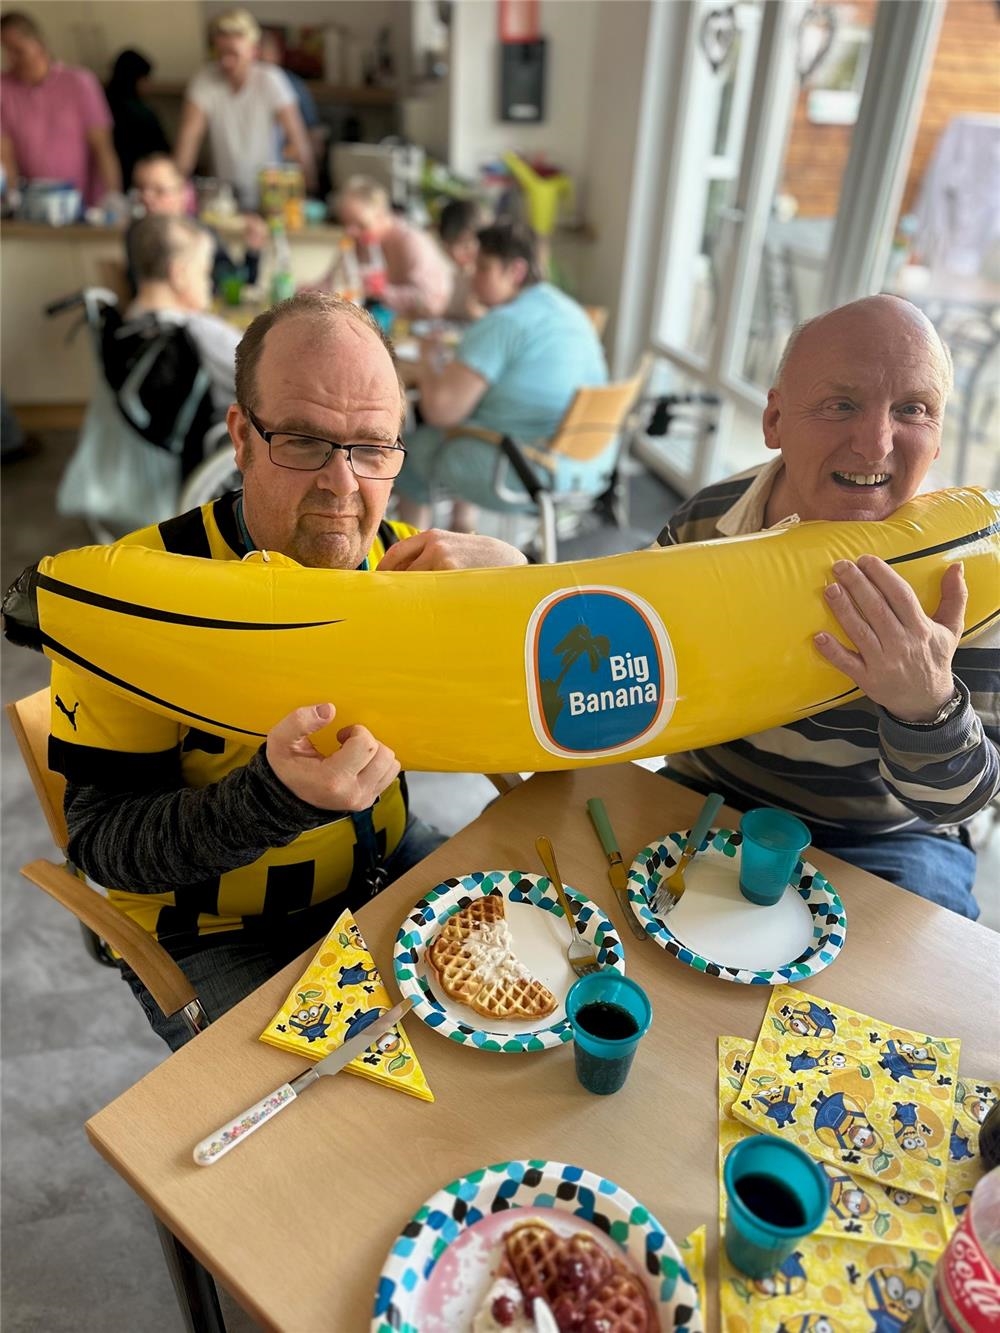 bewohner von St. gabriel mit aufblasbarer Banane 